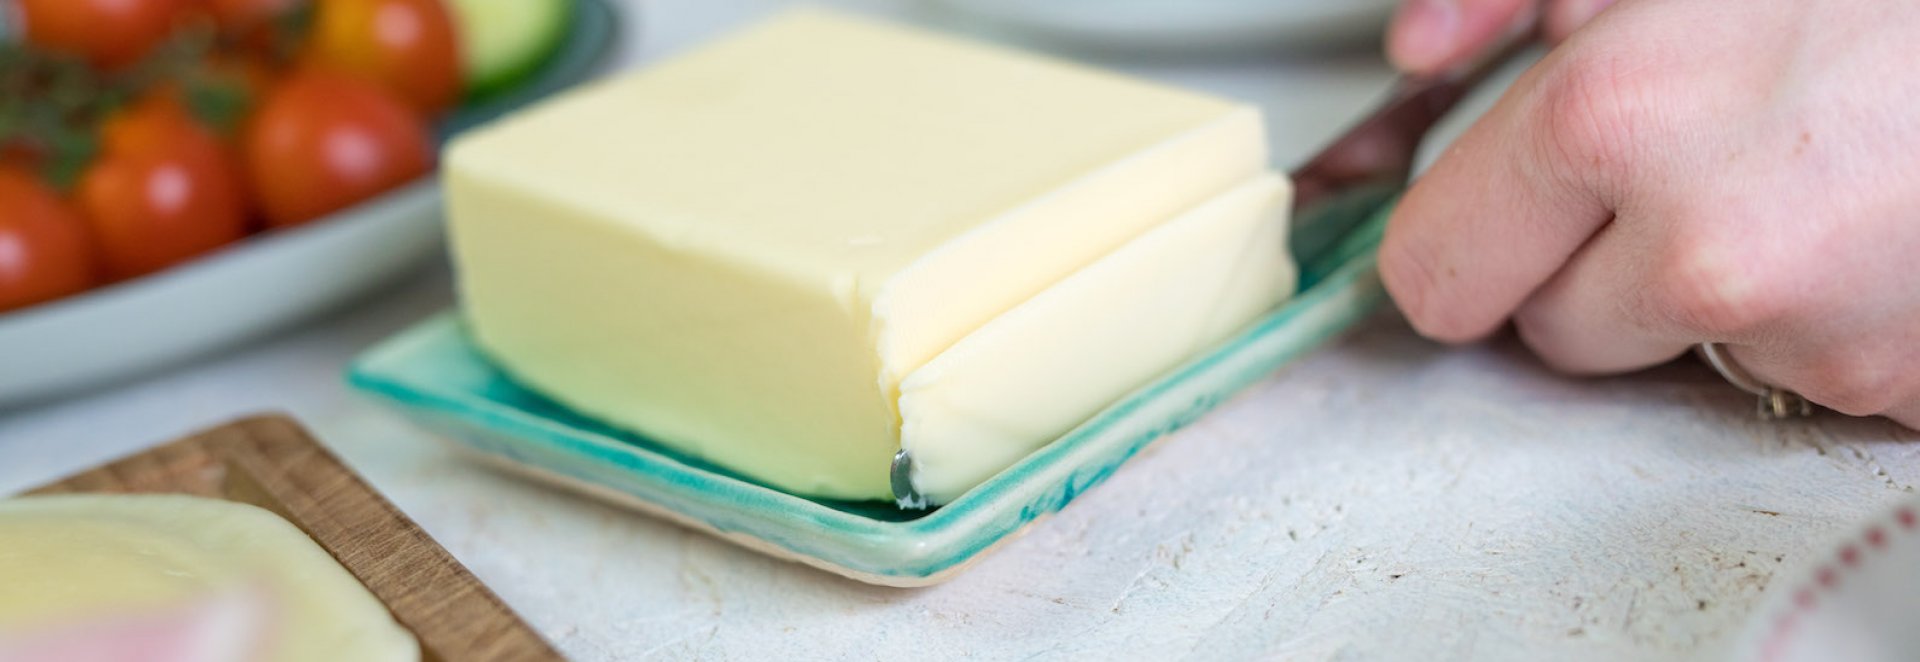 Složení másla je prosté – základem je kvalitní smetana